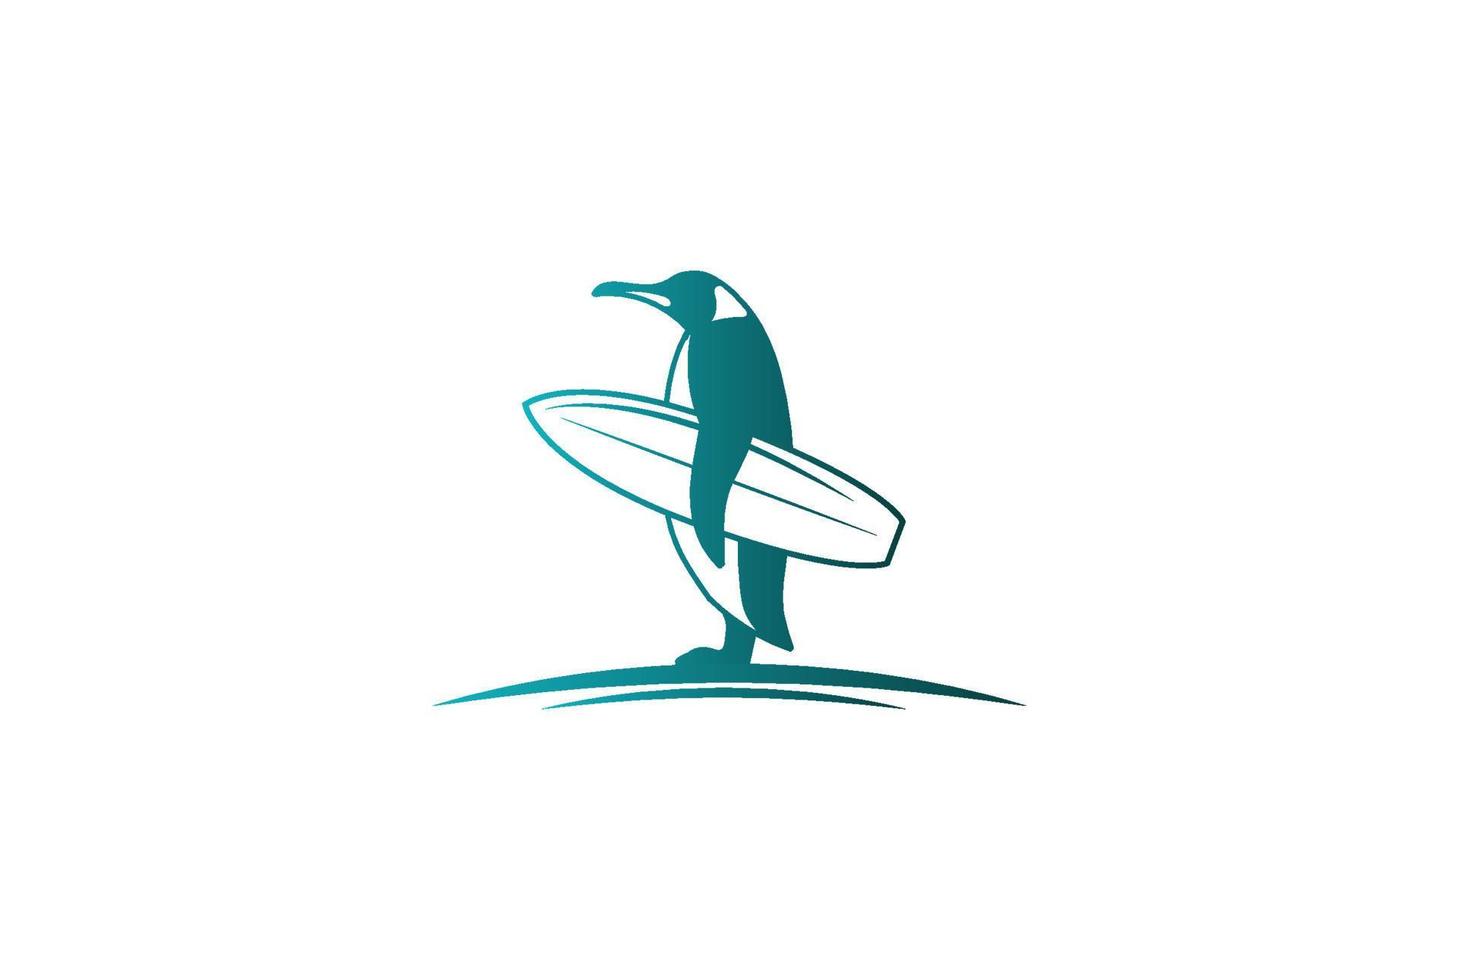 semplice in piedi pinguino mascotte personaggio cartone animato tenere tavola da surf per spiaggia surf sport club concorrenza logo design vettore